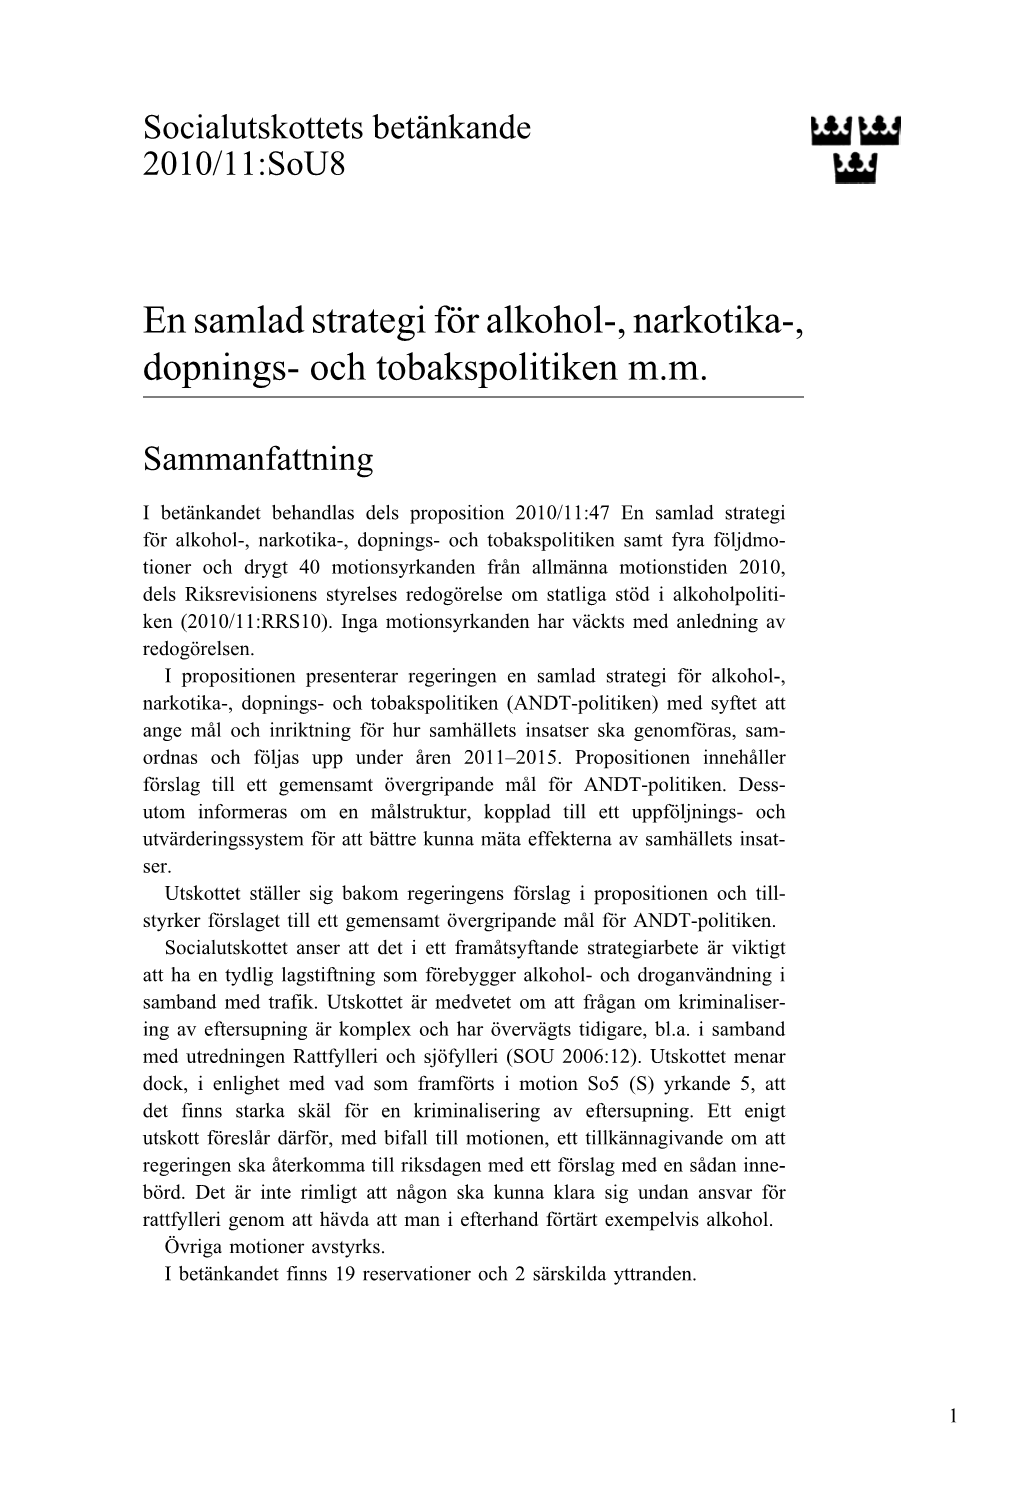 Bet. 2010/11:Sou8 En Samlad Strategi För Alkohol-, Narkotika